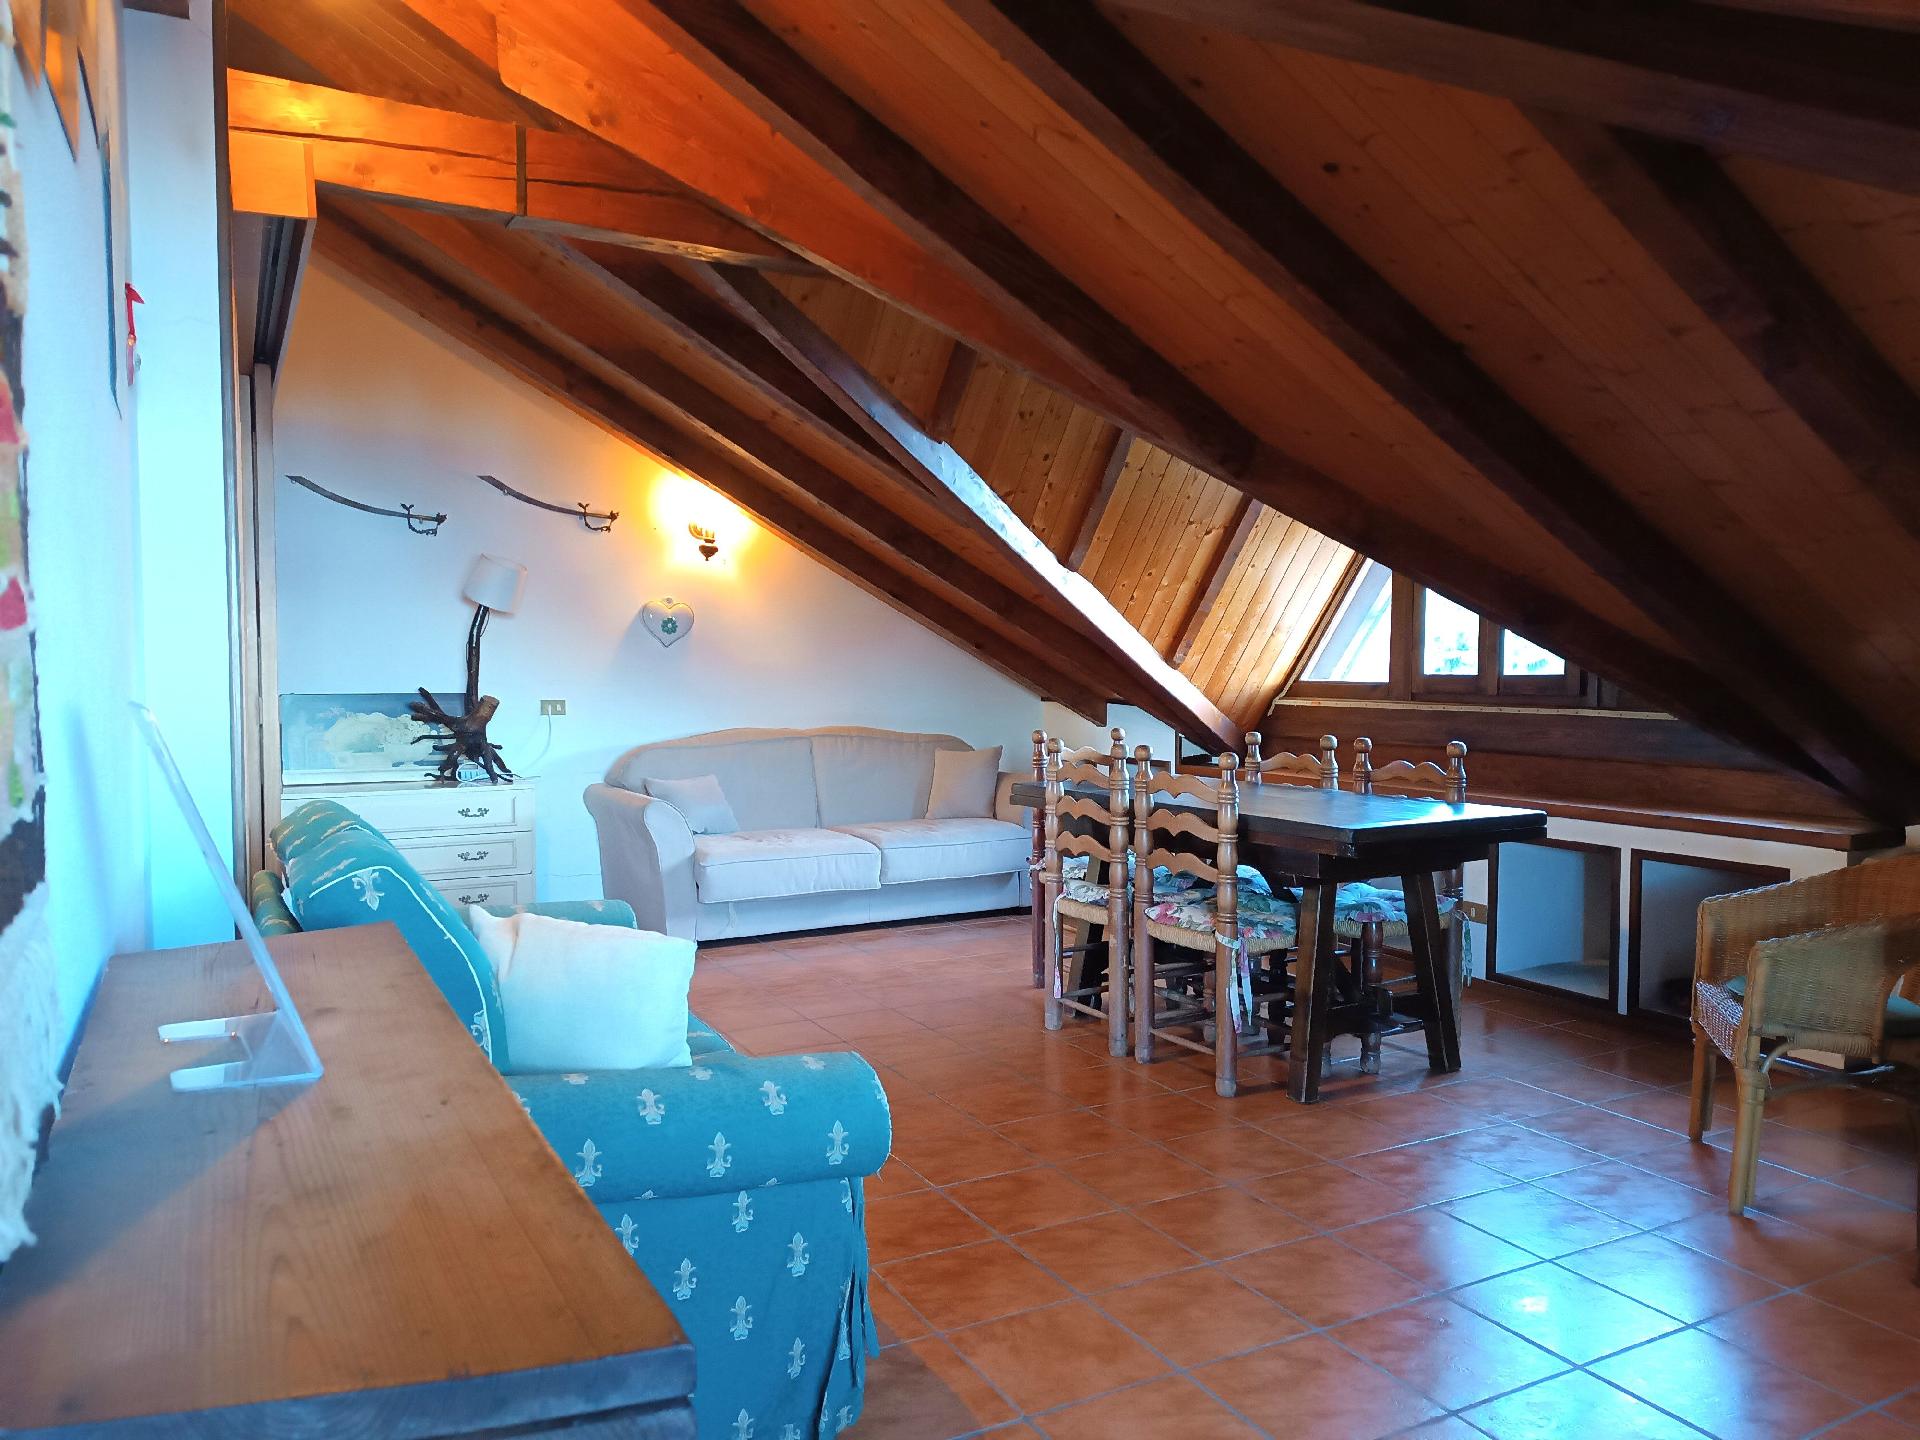 Ferienwohnung für 4 Personen ca. 65 m² i Ferienwohnung in Italien